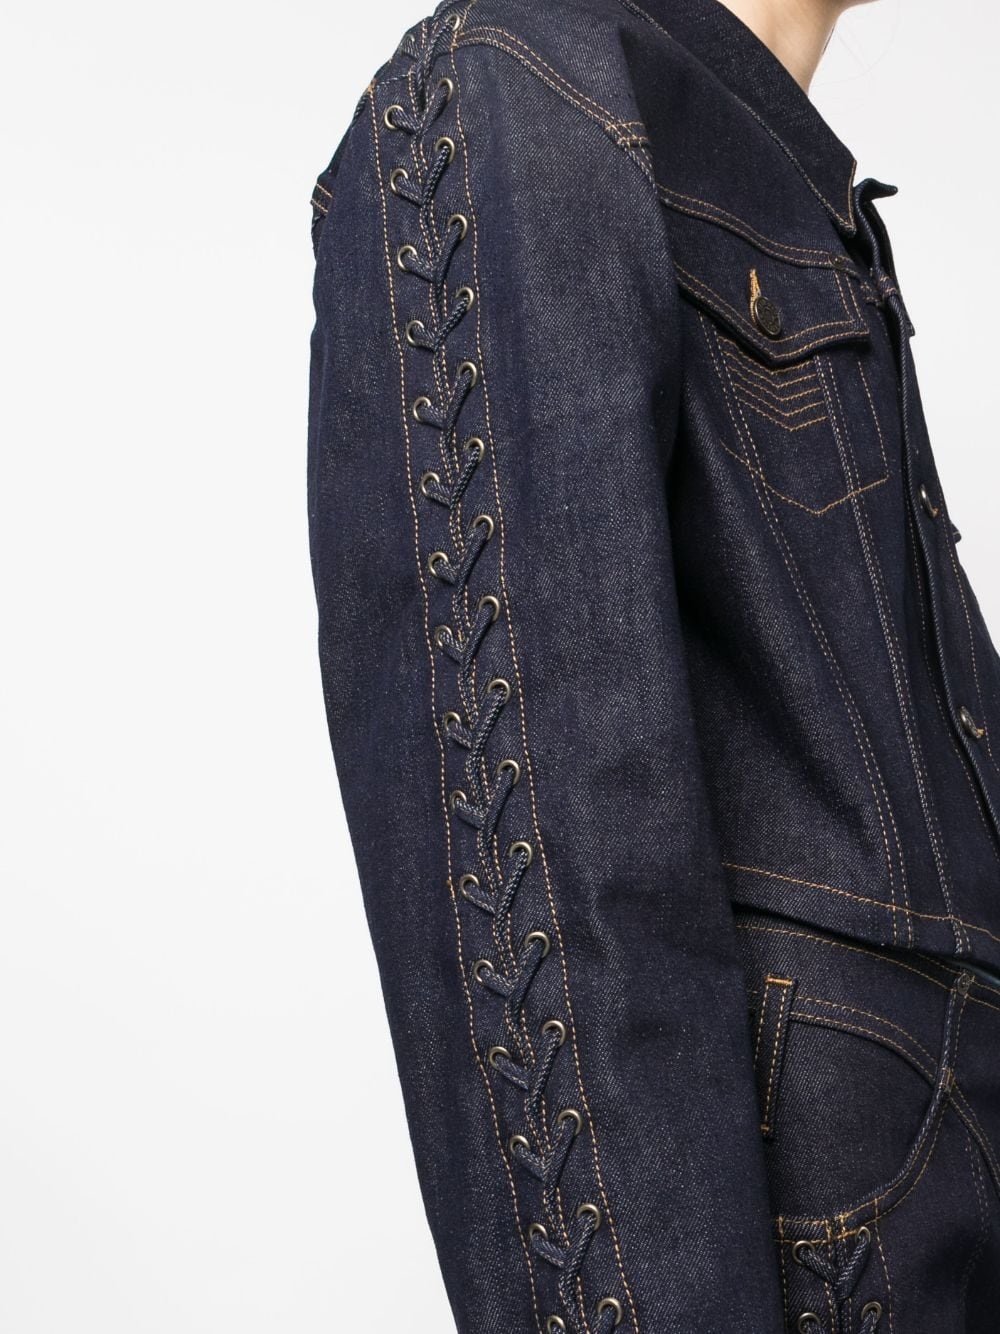 lace-up detail denim jacket - 5